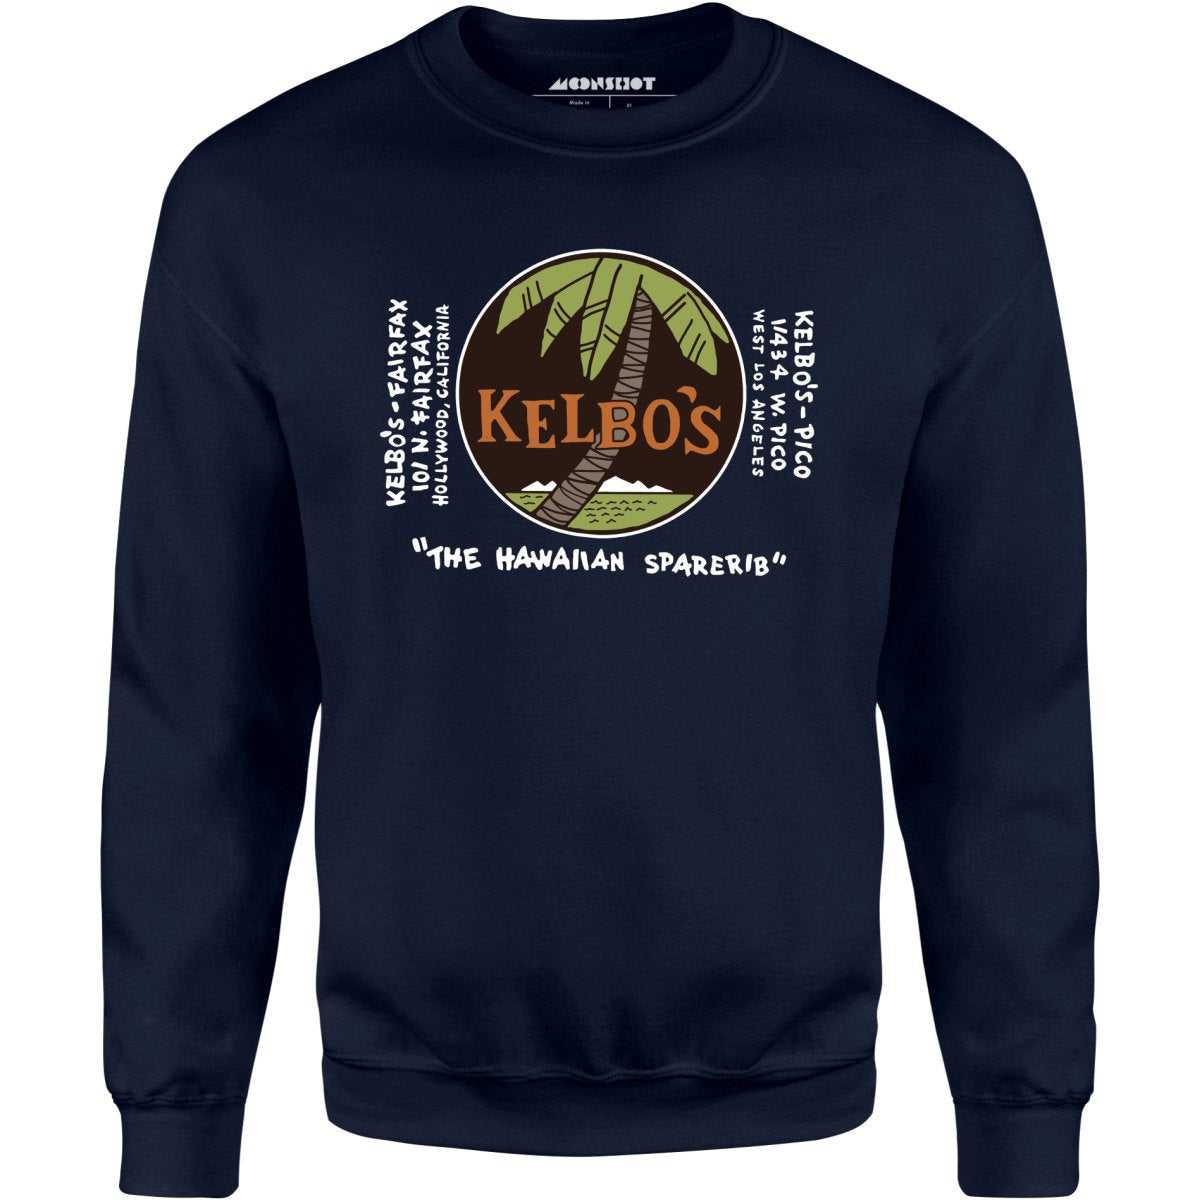 Kelbo's - Los Angeles, CA - Vintage Tiki Bar - Unisex Sweatshirt